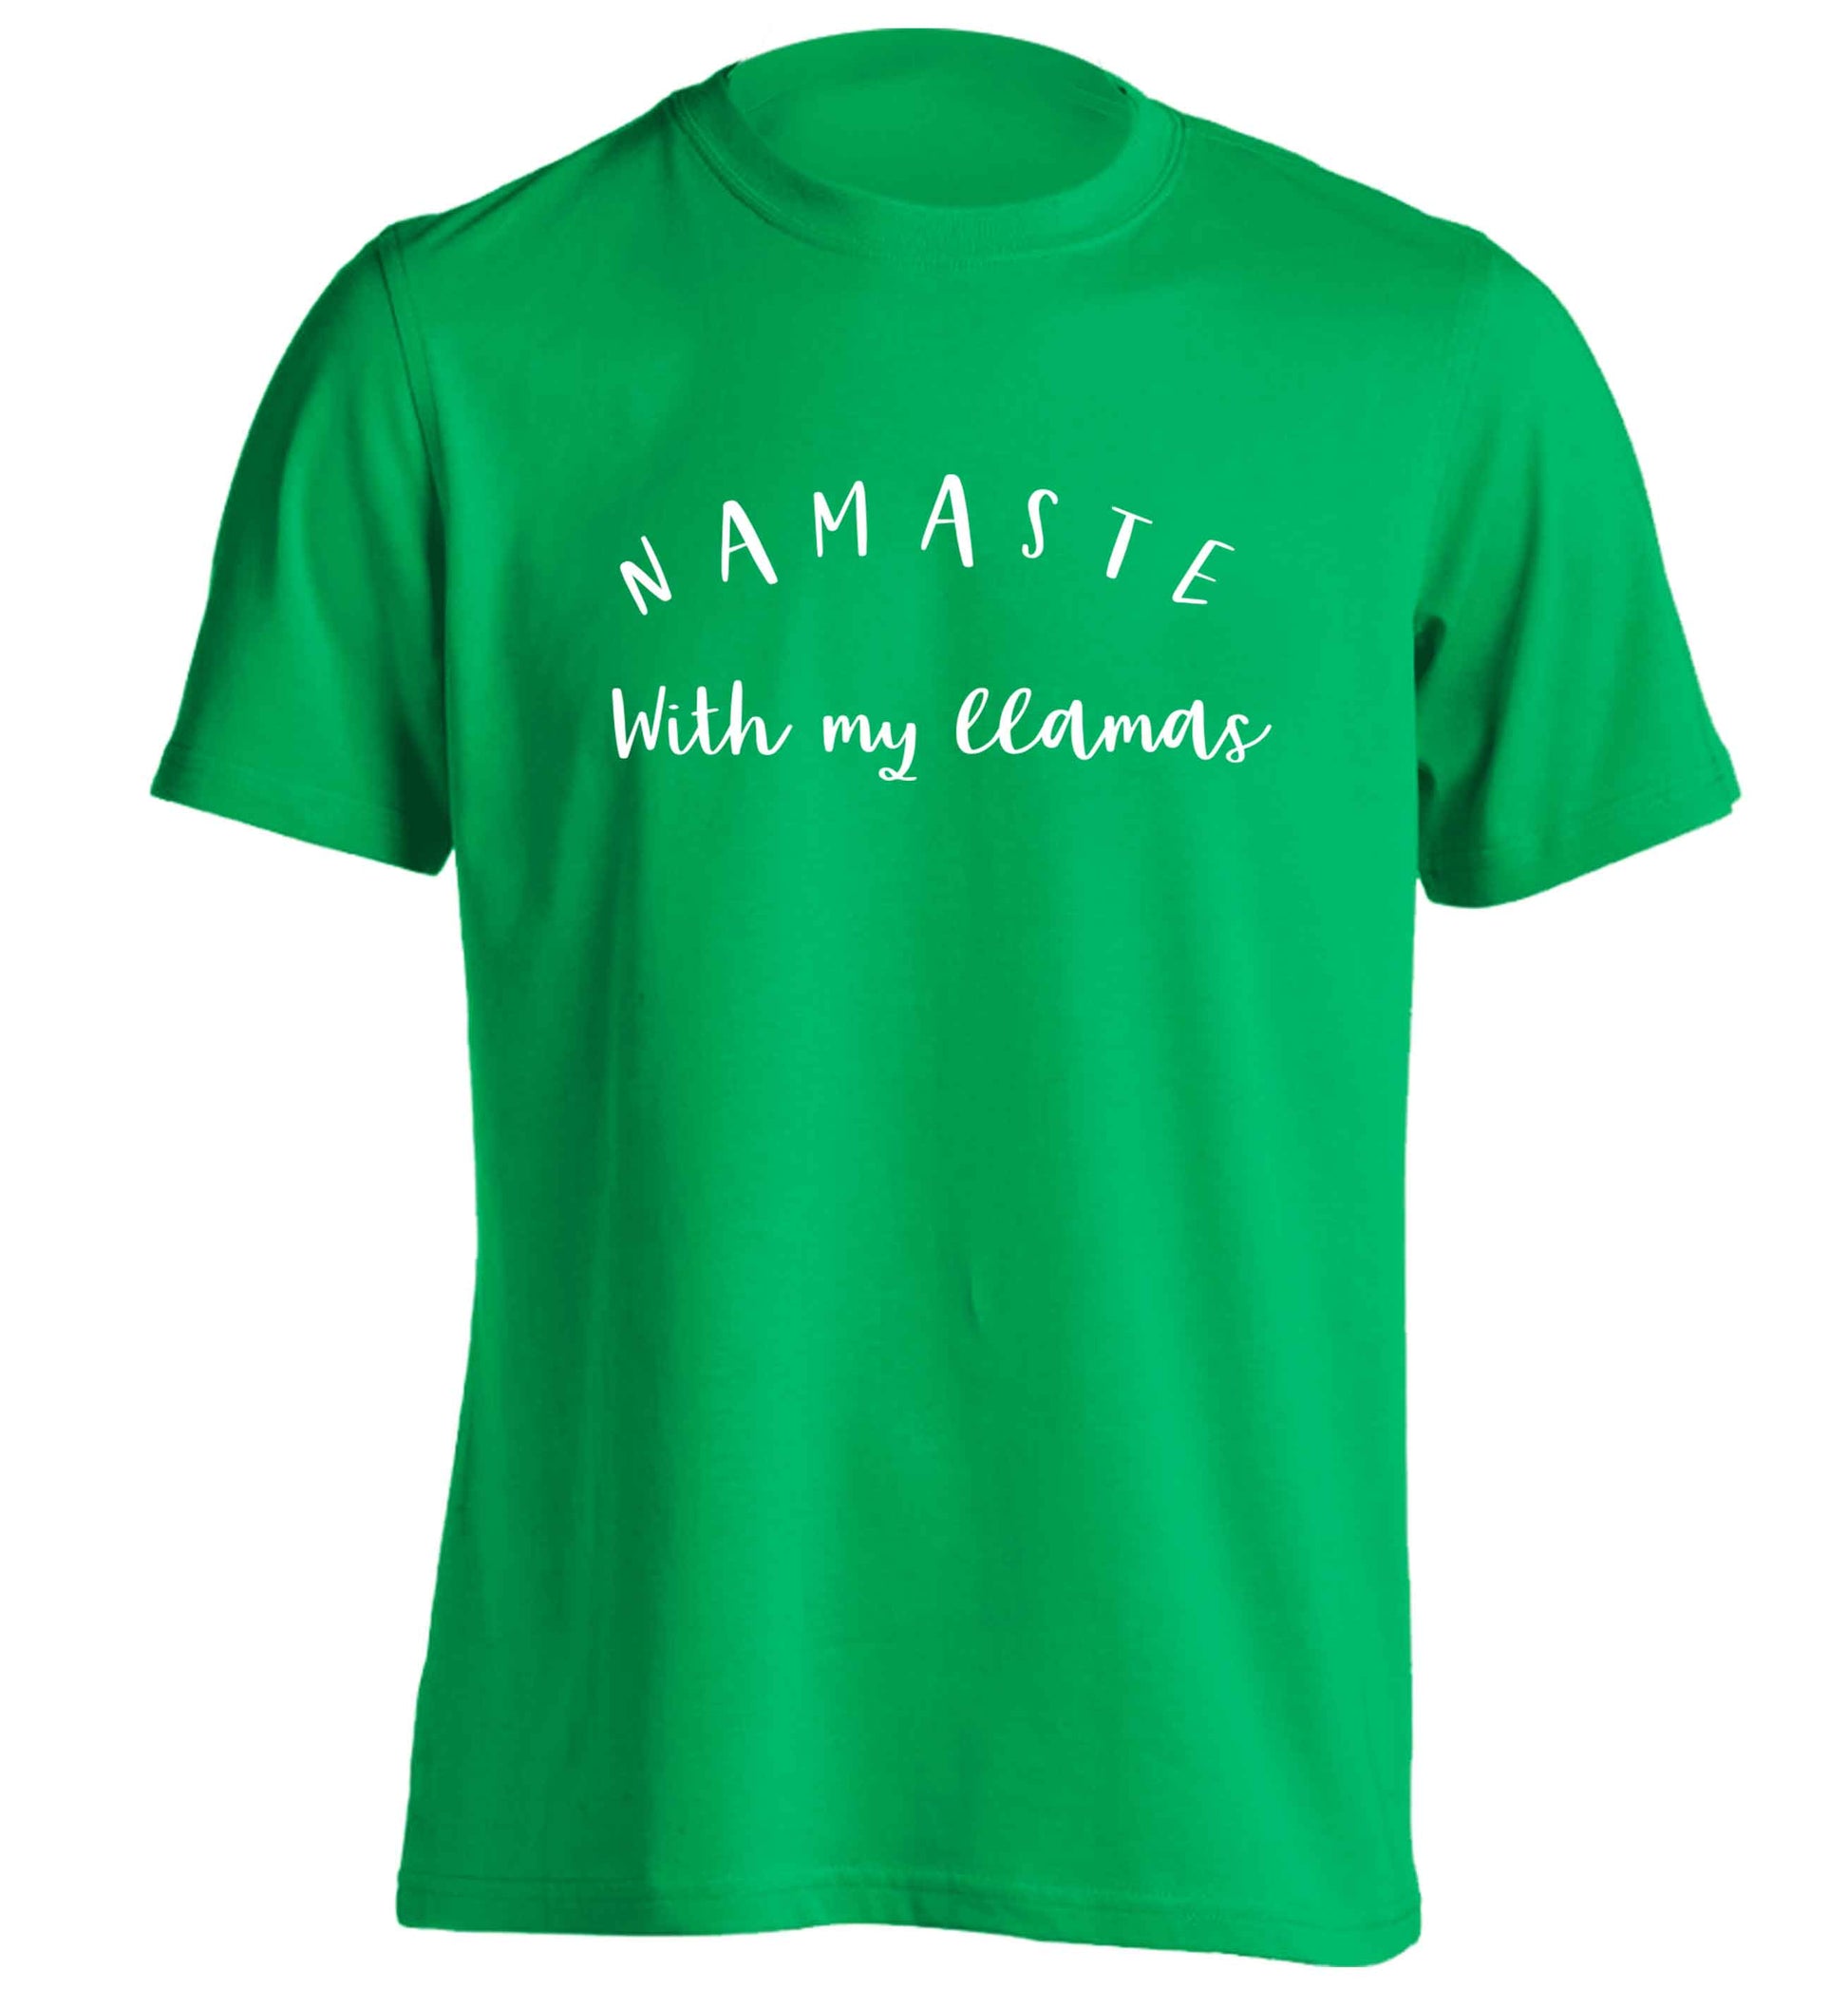 Namaste with my llamas adults unisex green Tshirt 2XL